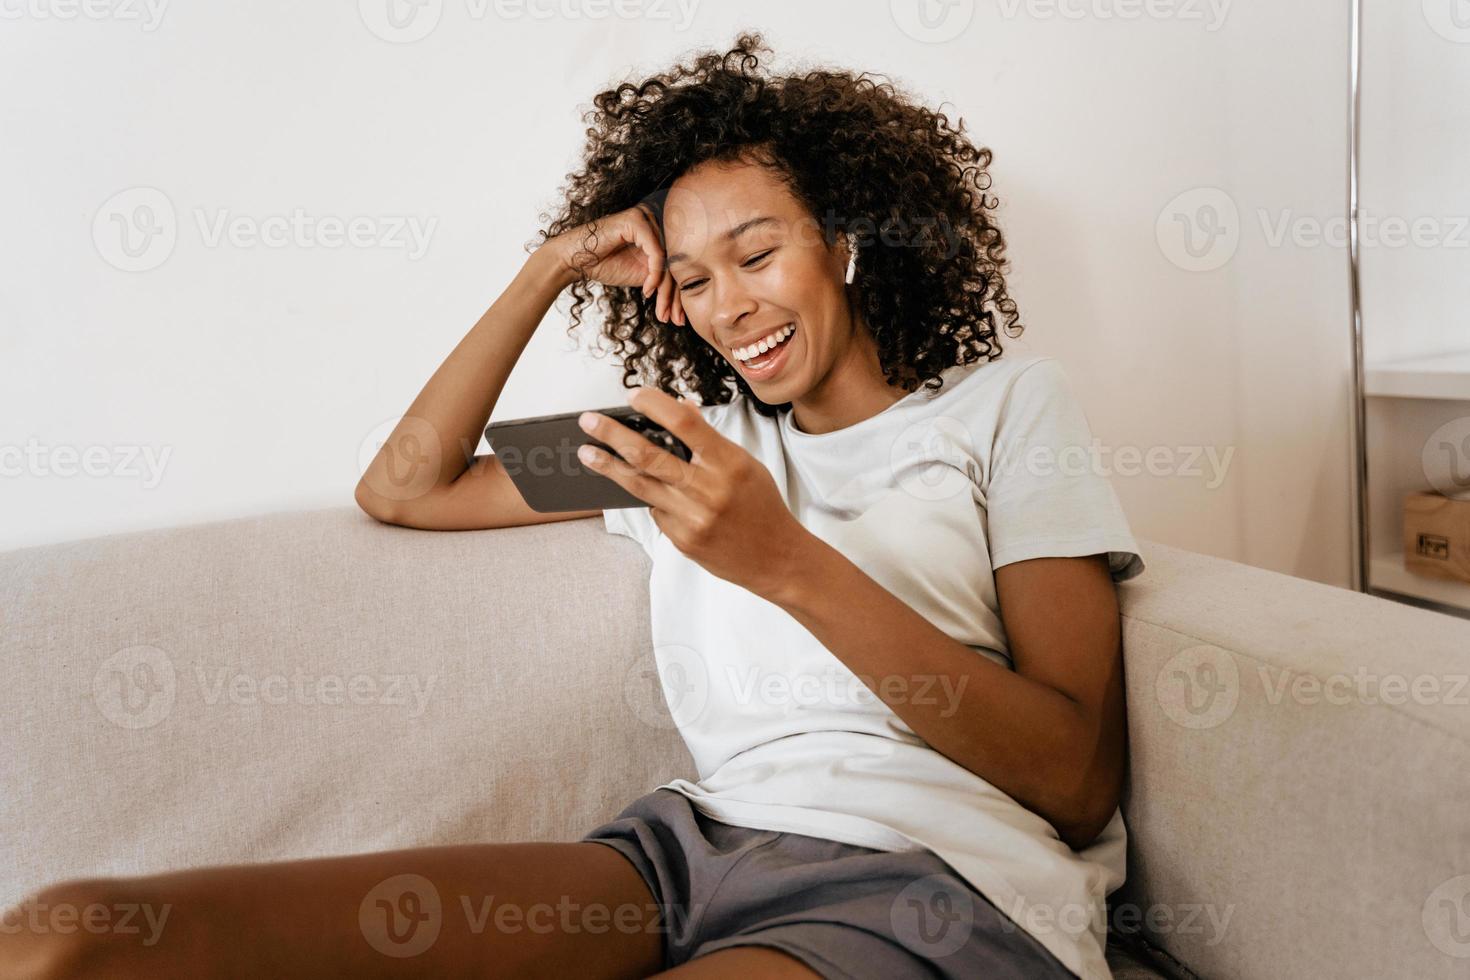 svart ung kvinna i hörlurar med mobiltelefon medan hon vilar på soffan foto